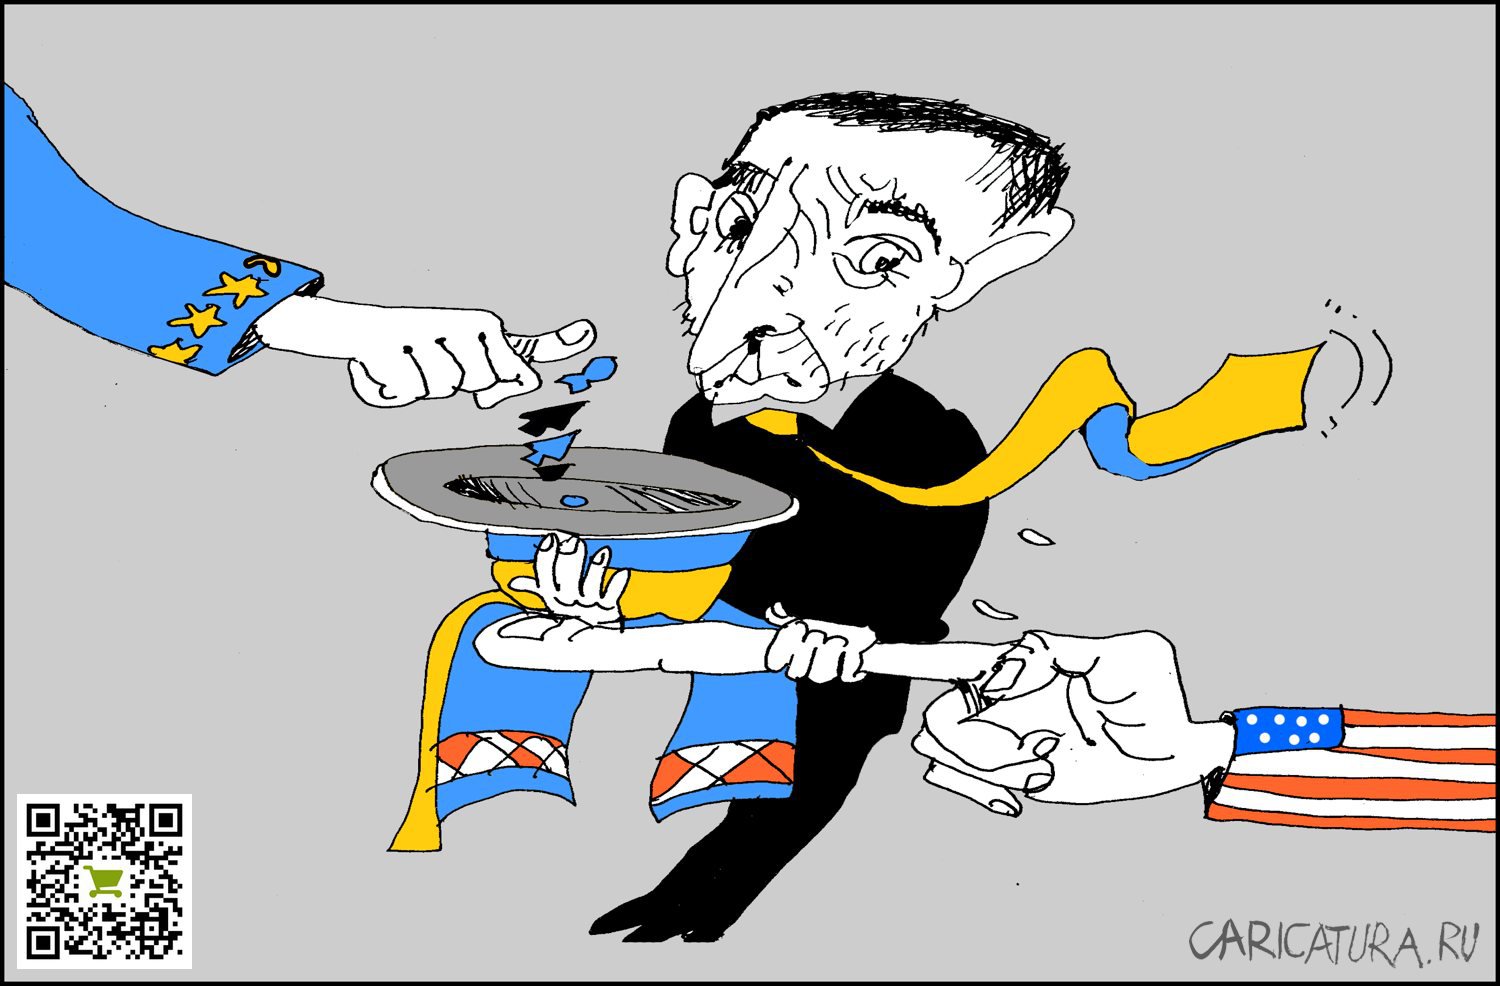 Карикатура "Хлеб, соль и последний украинец", Александр Уваров